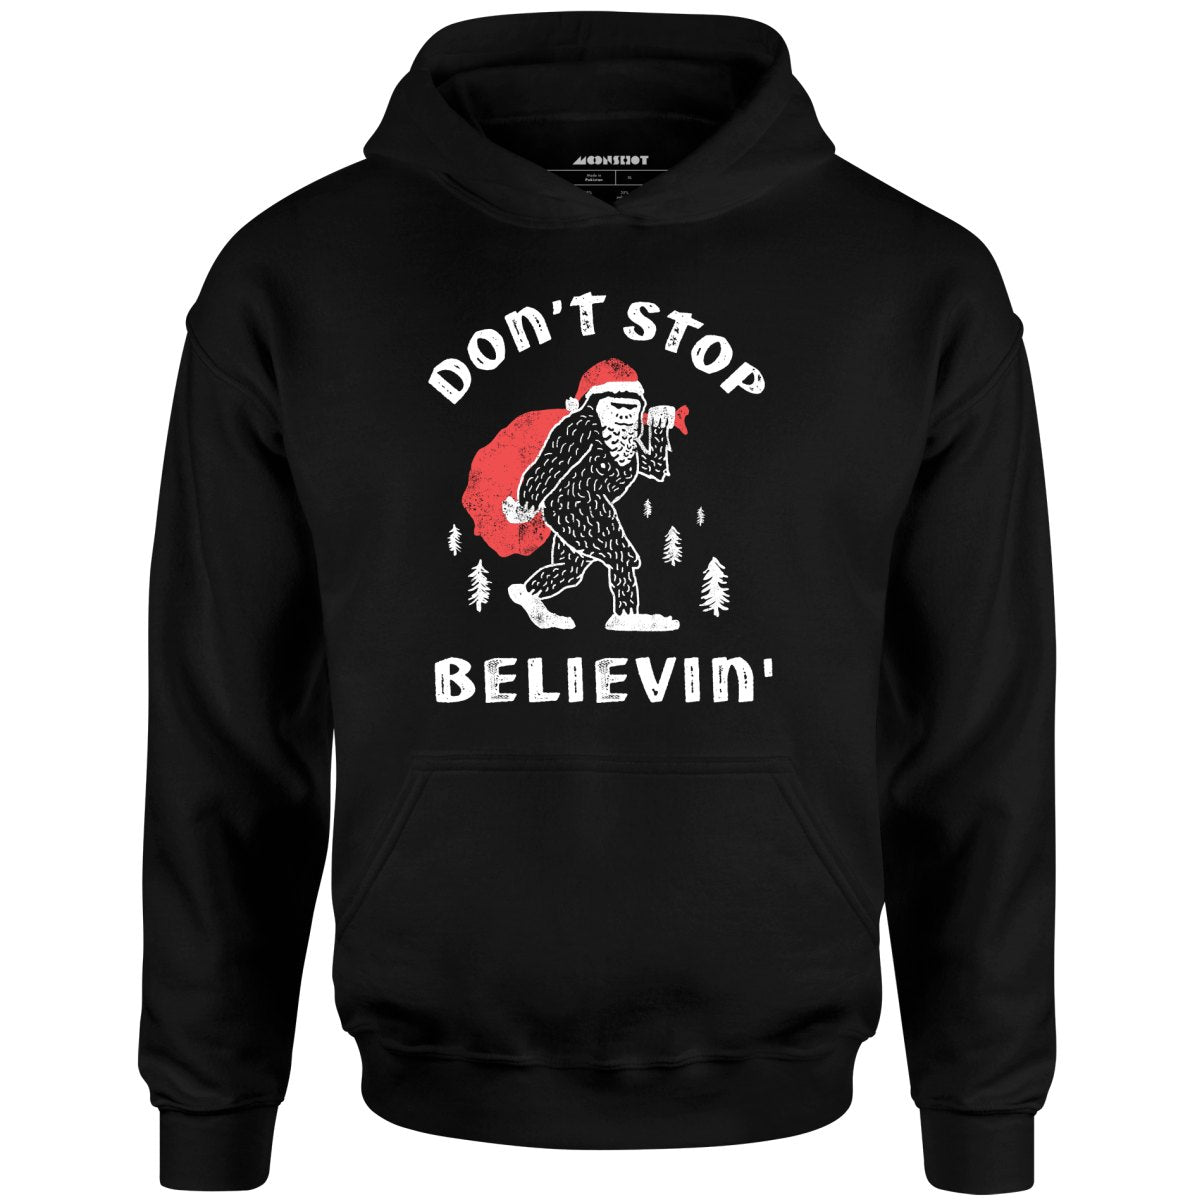 Don't Stop Believin' - Unisex Hoodie